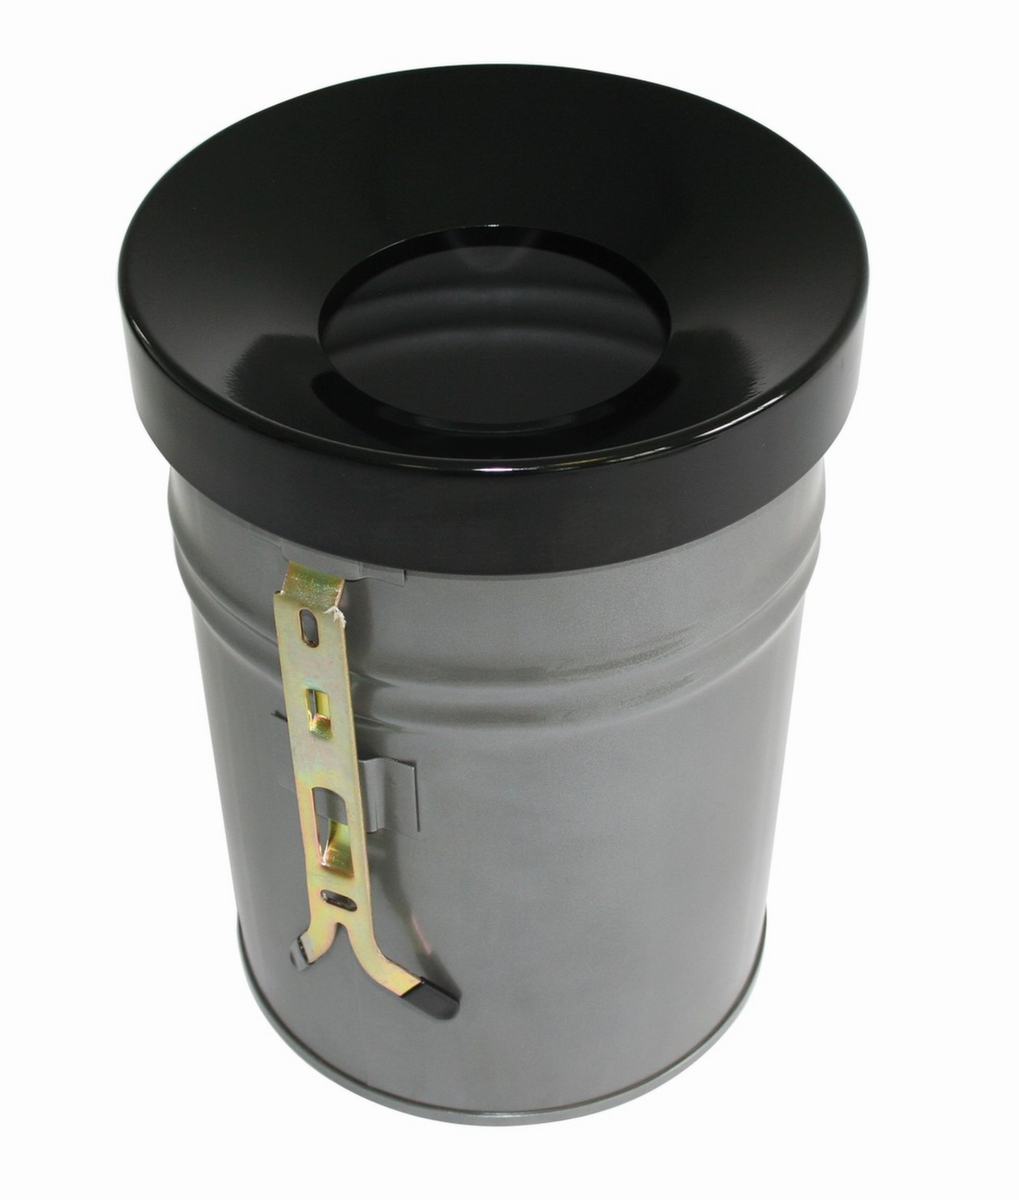 Selbstlöschender Abfallbehälter FIRE EX zur Wandbefestigung, 24 l, lichtgrau, Kopfteil schwarz Standard 1 ZOOM